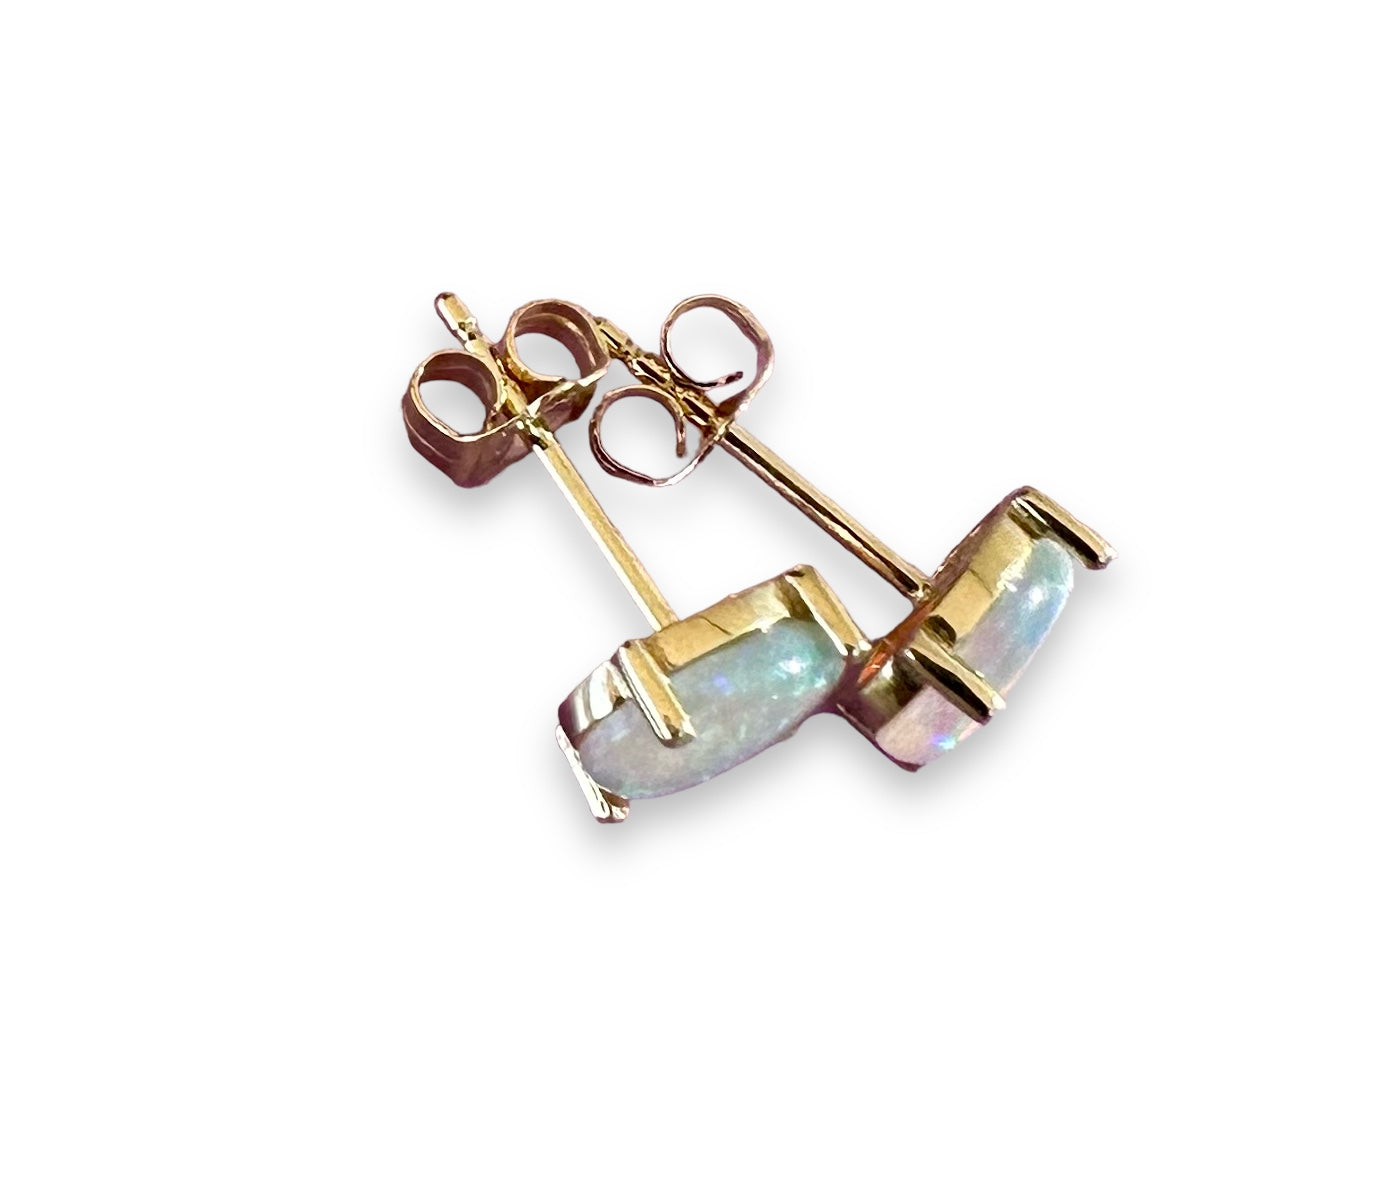 Crystal opal stud earrings set in 14k yellow gold - Opal Essence Wholesalers 